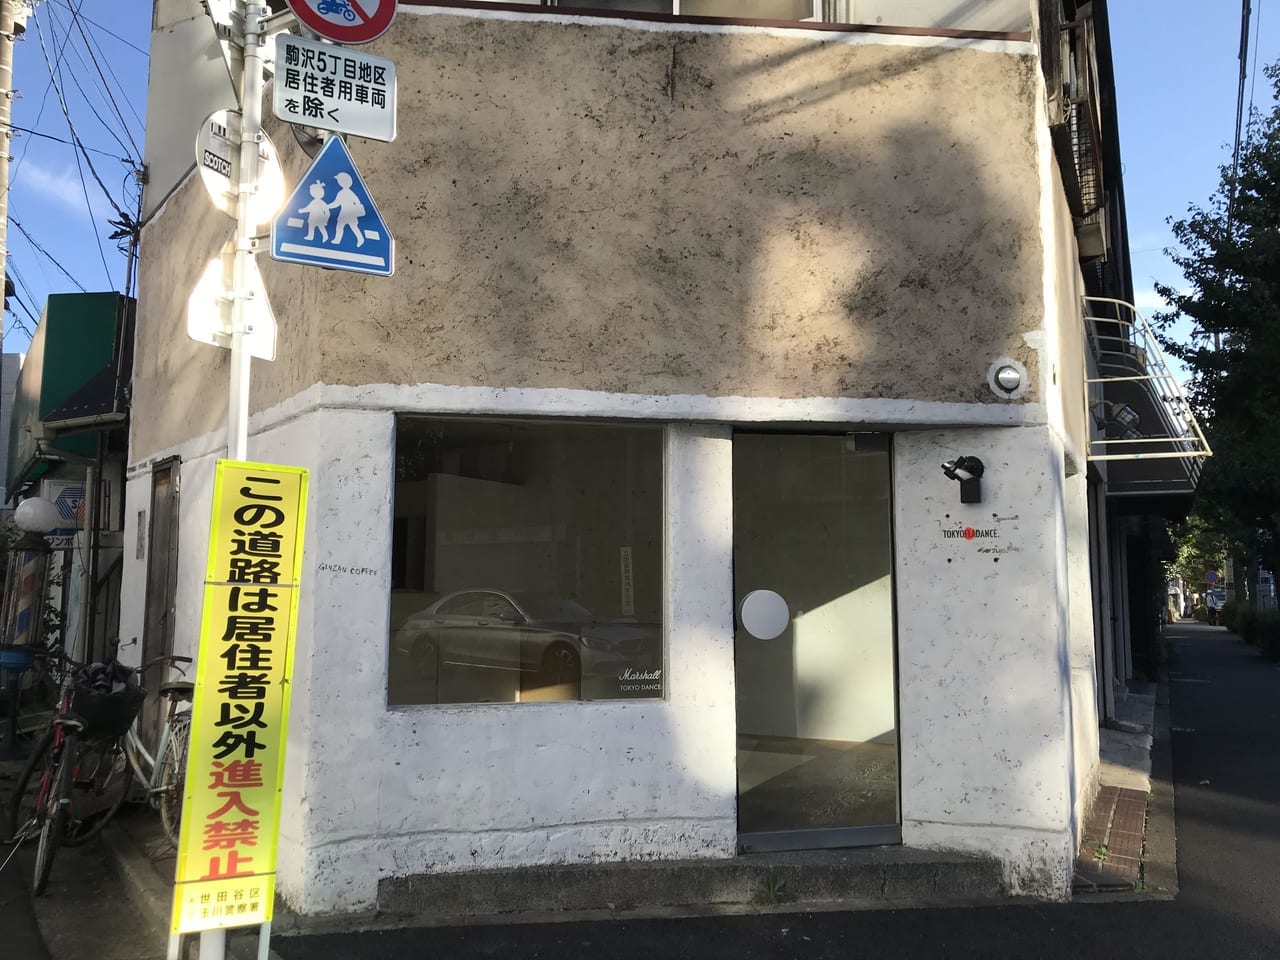 世田谷区駒沢「TOKYO DANCE」は移転のため閉店、目黒区八雲で新店舗オープンしています。